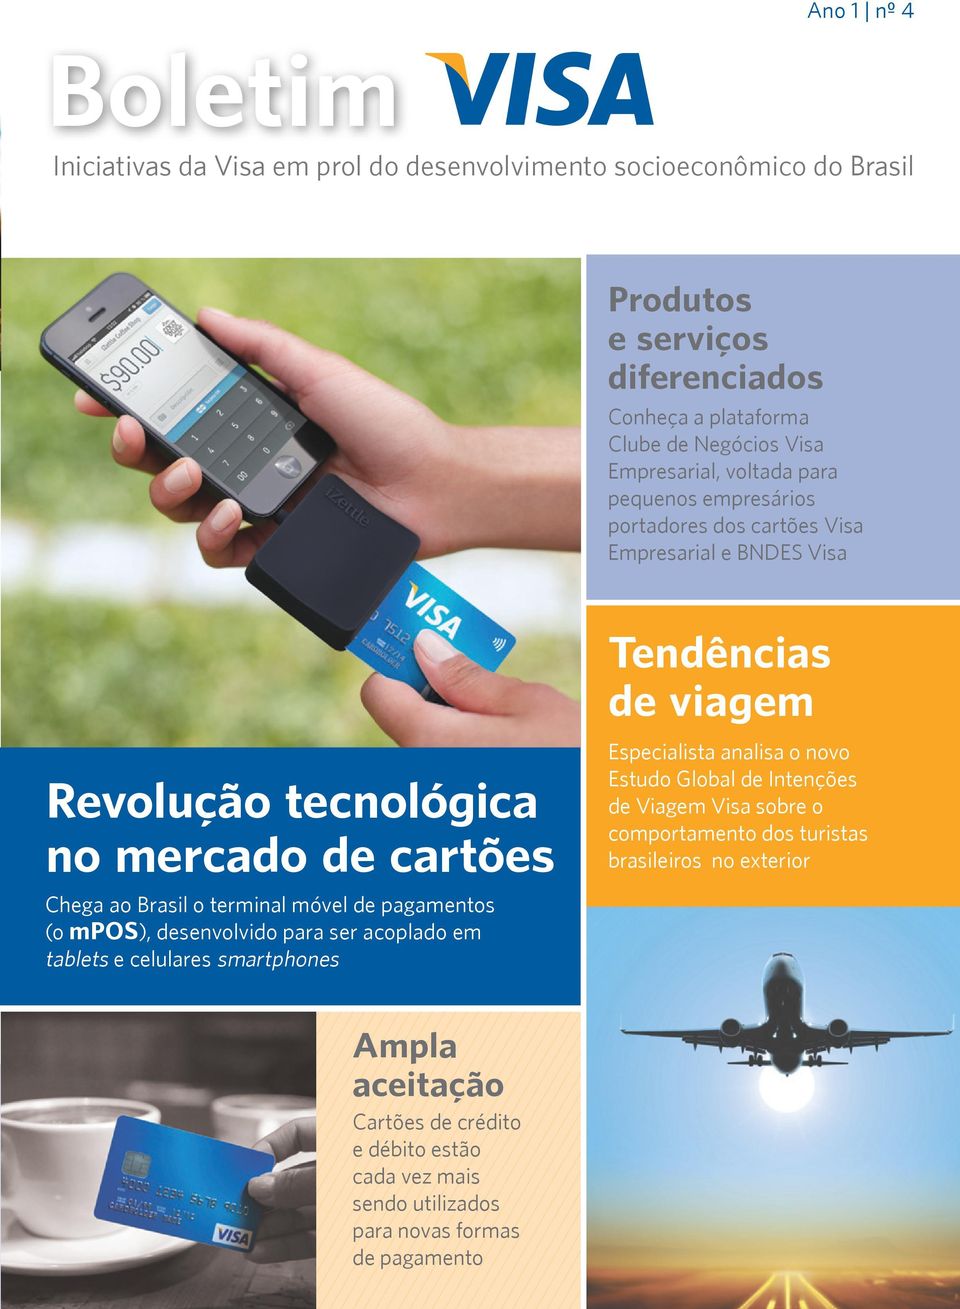 móvel de pagamentos (o mpos), desenvolvido para ser acoplado em tablets e celulares smartphones Tendências de viagem Especialista analisa o novo Estudo Global de Intenções de